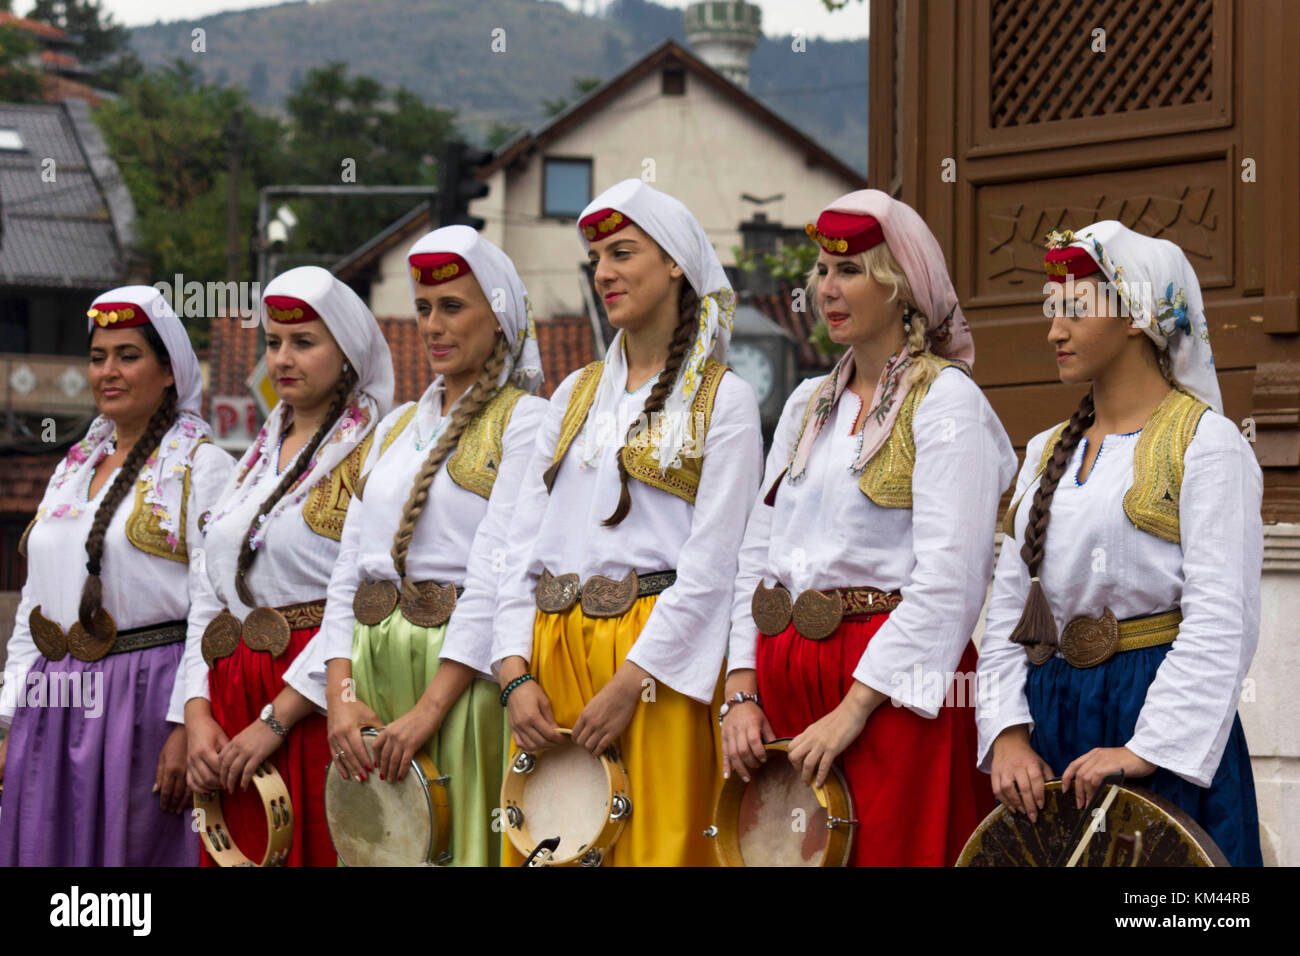 Sarajevo, Bosnien und Herzegowina - 20. August 2017: Gruppe der ...